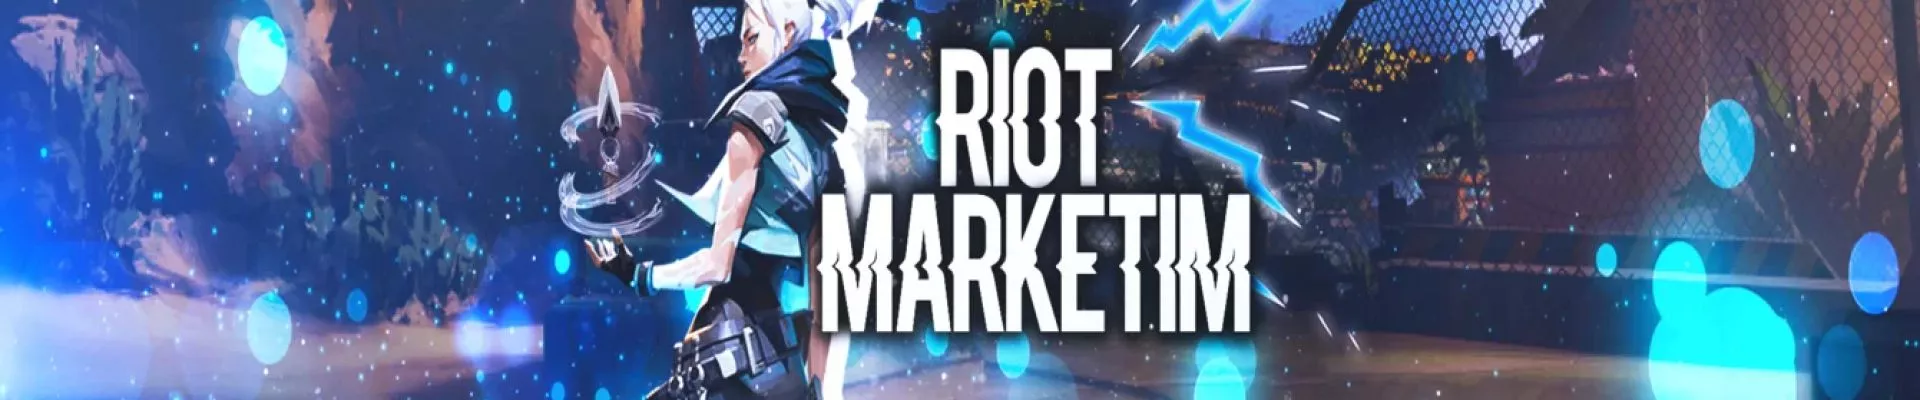 RiotMarketim kapak fotoğrafı